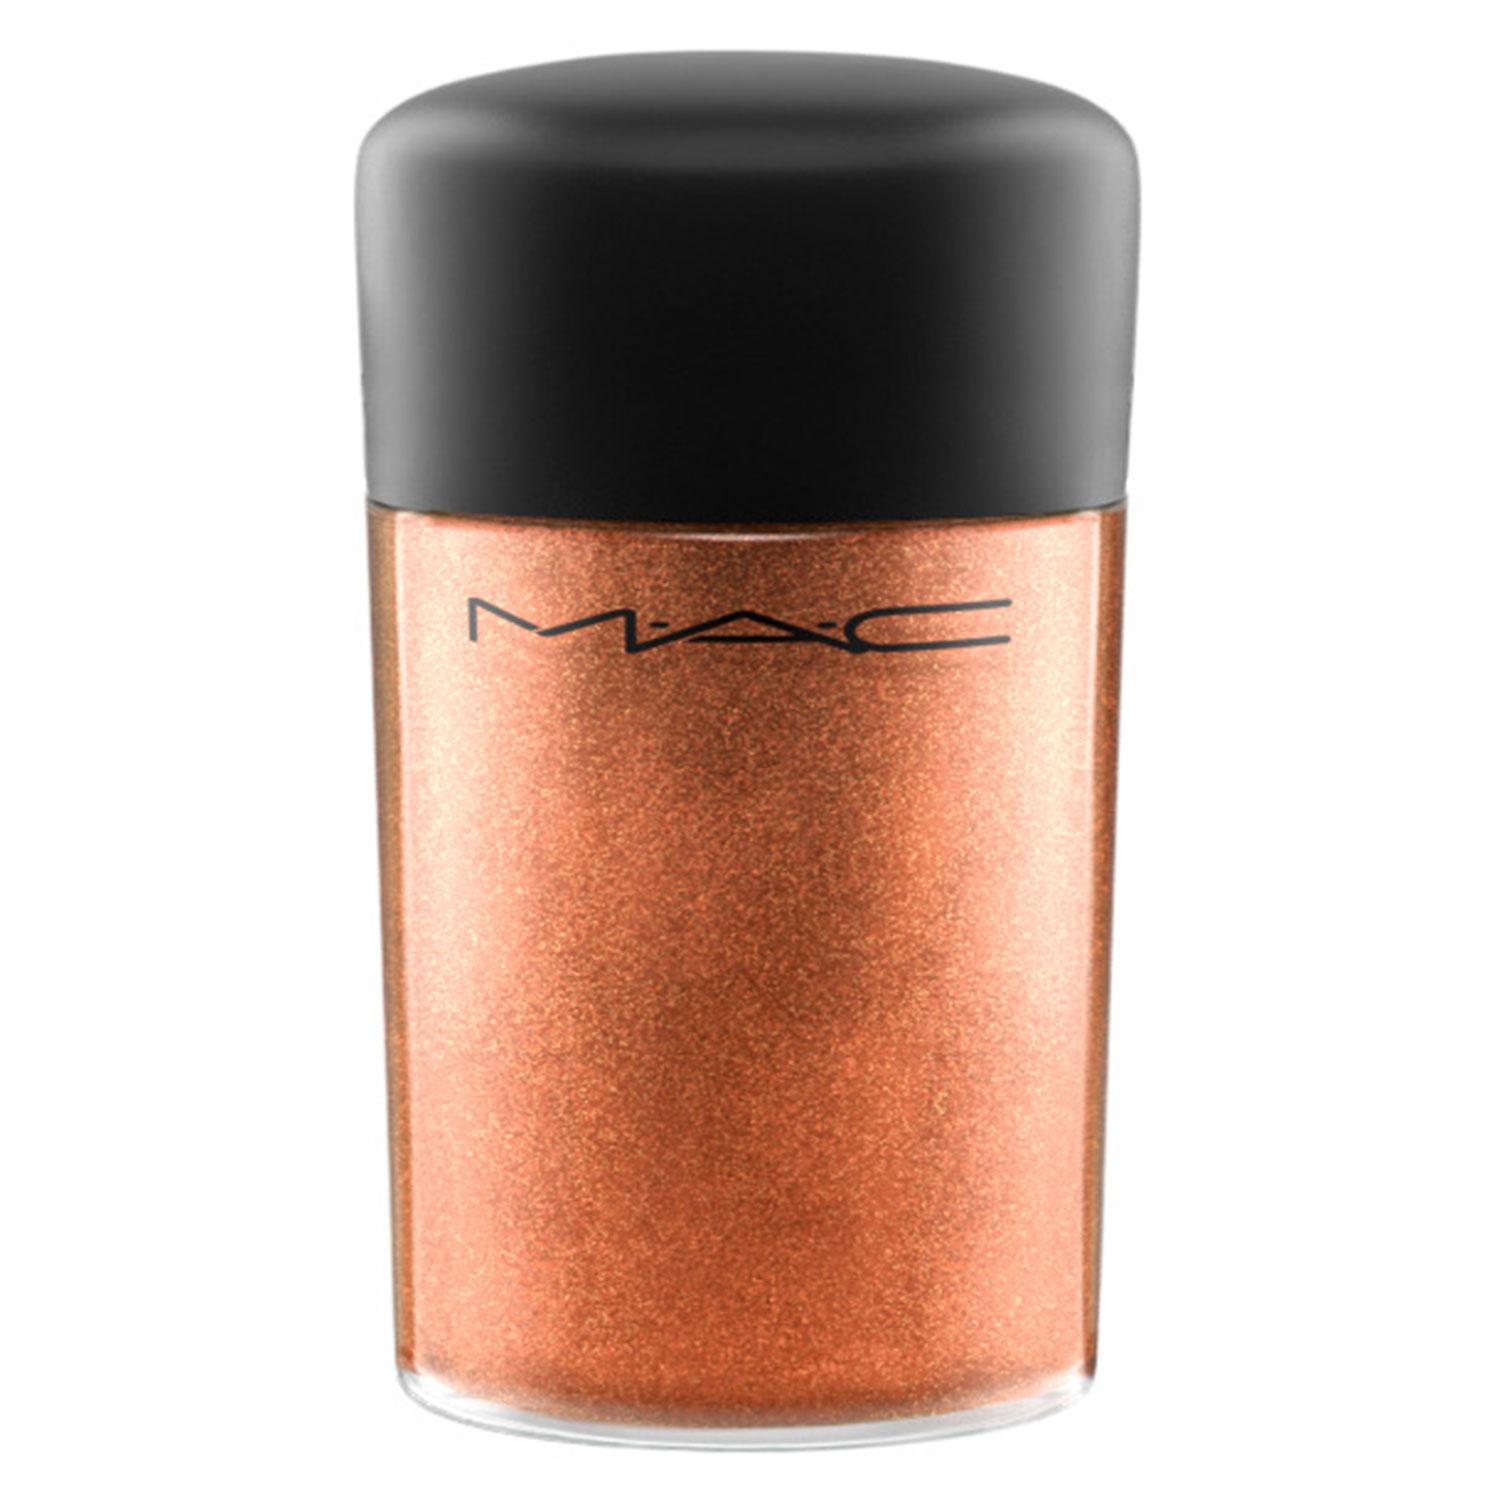 M·A·C Pigment - Copper Sparkle